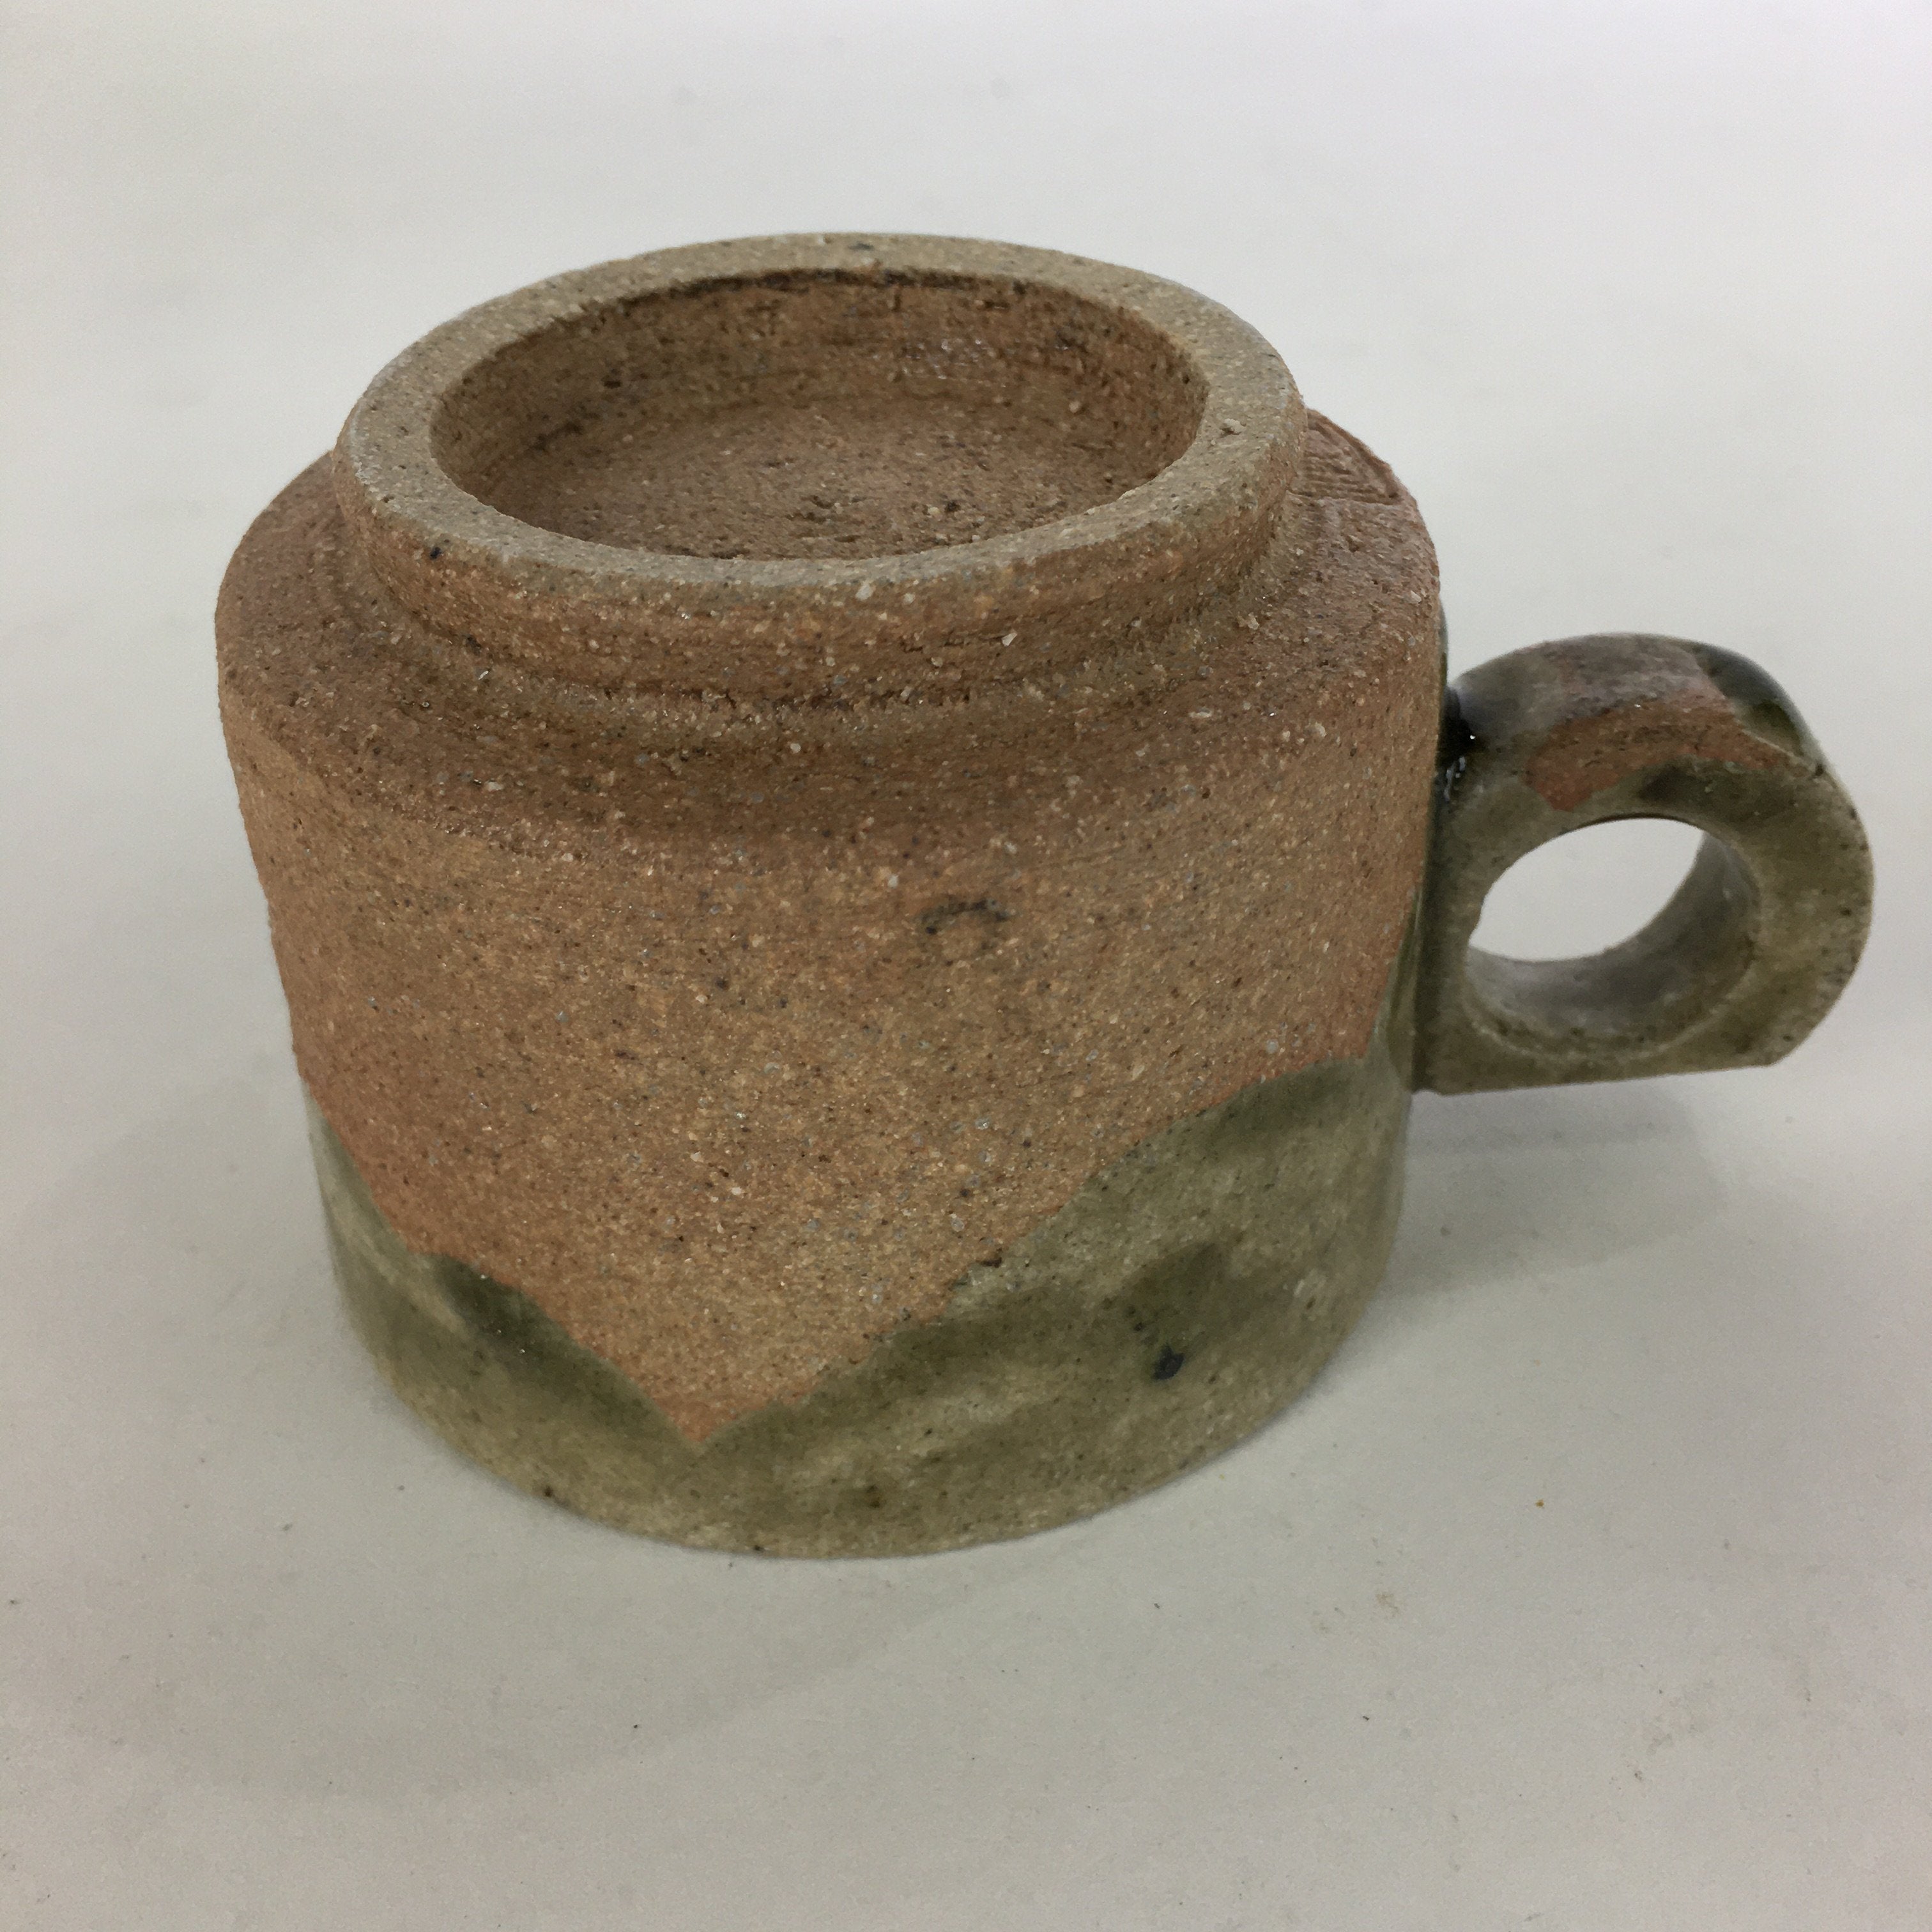 Japanese Ceramic Igayaki Teacup Mug Saucer Vtg Cup Plate Set Green Glaze PP576